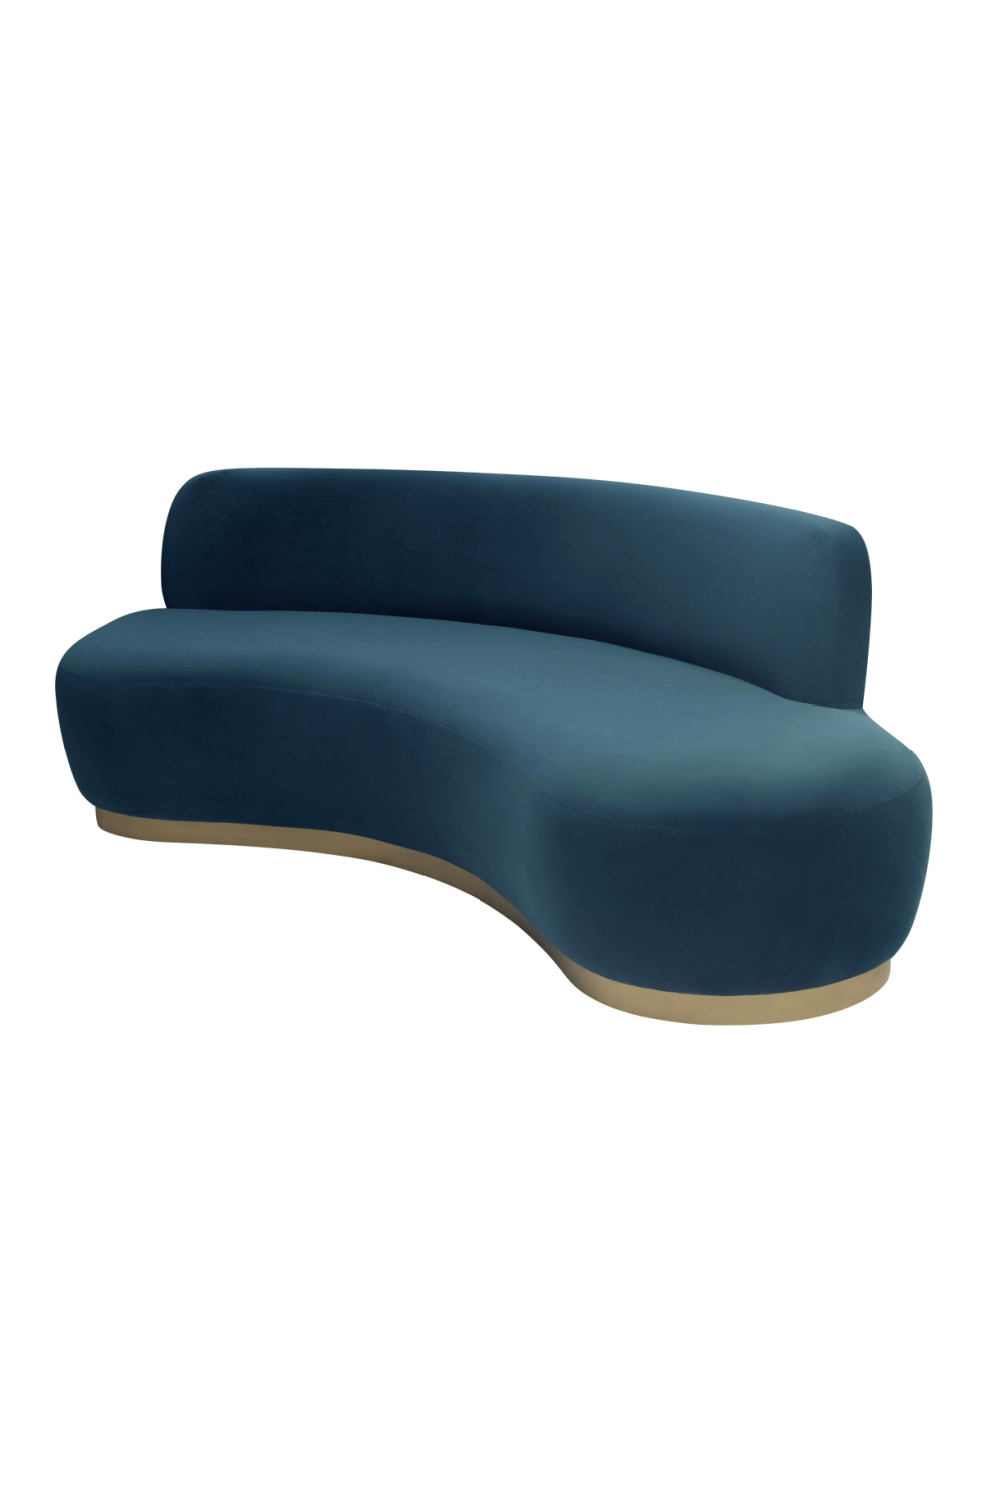 Curved Contemporary Sofa | Liang & Eimil Sasha | Oroa.com